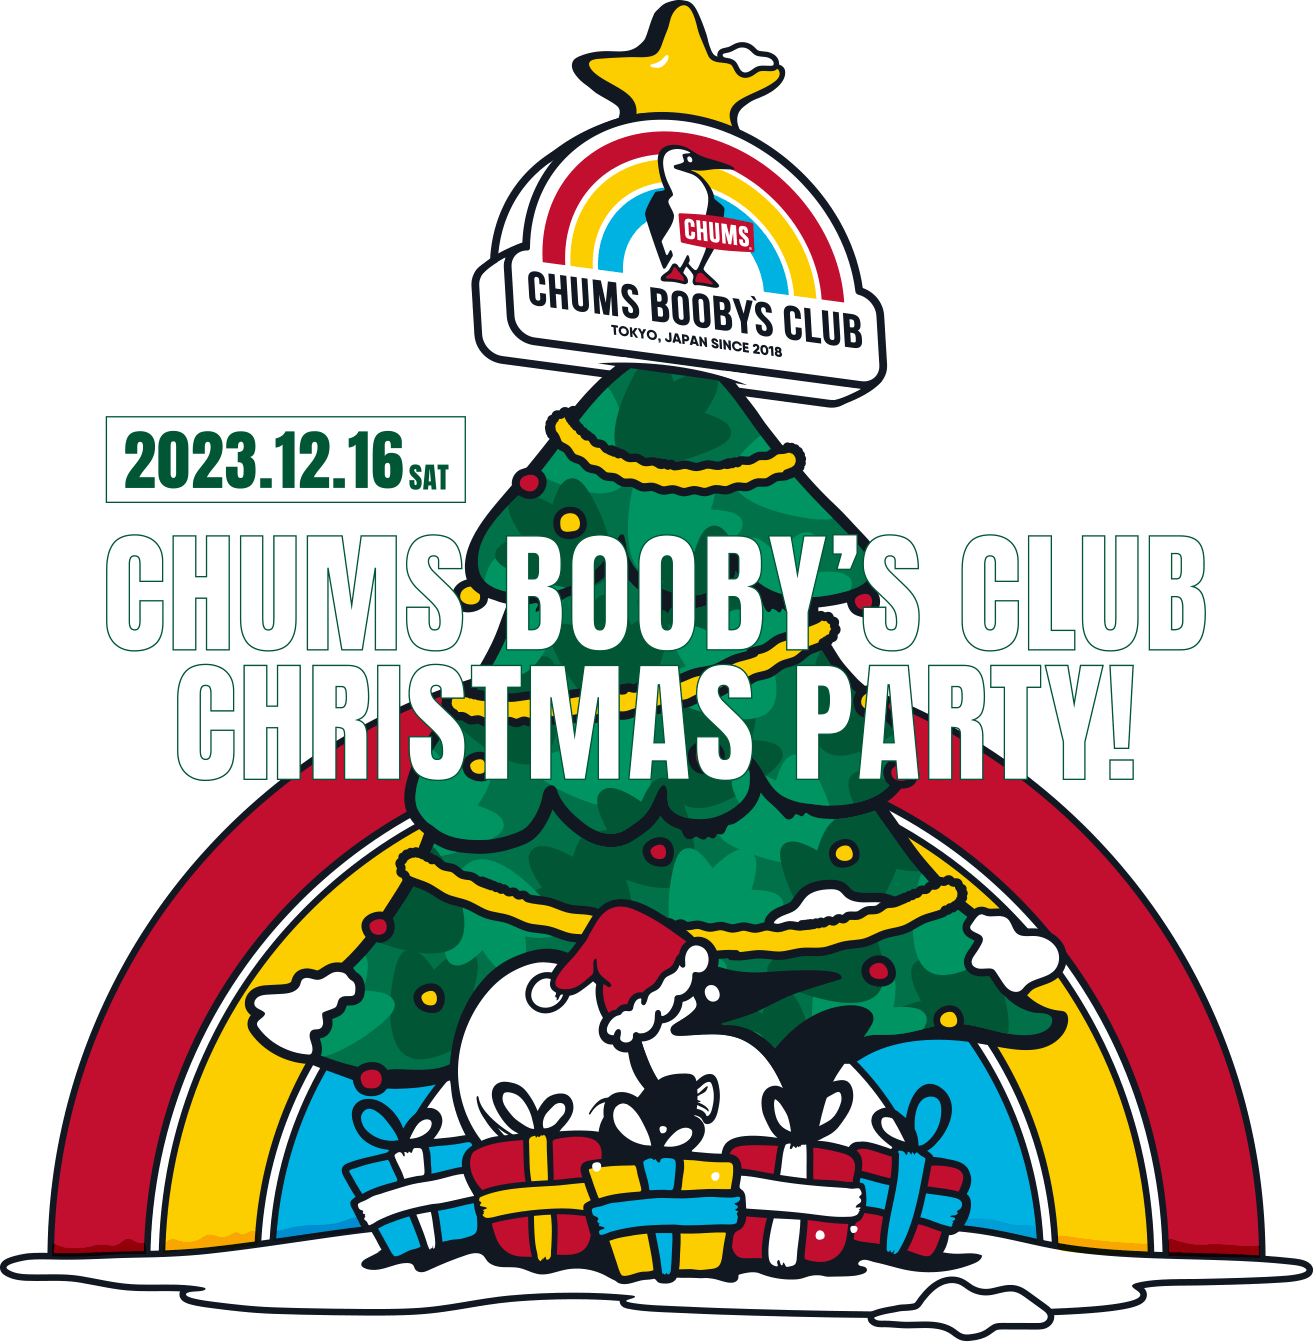 CHUMS BOOBY'S CLUB RAINBOW会員限定 X'masパーティー